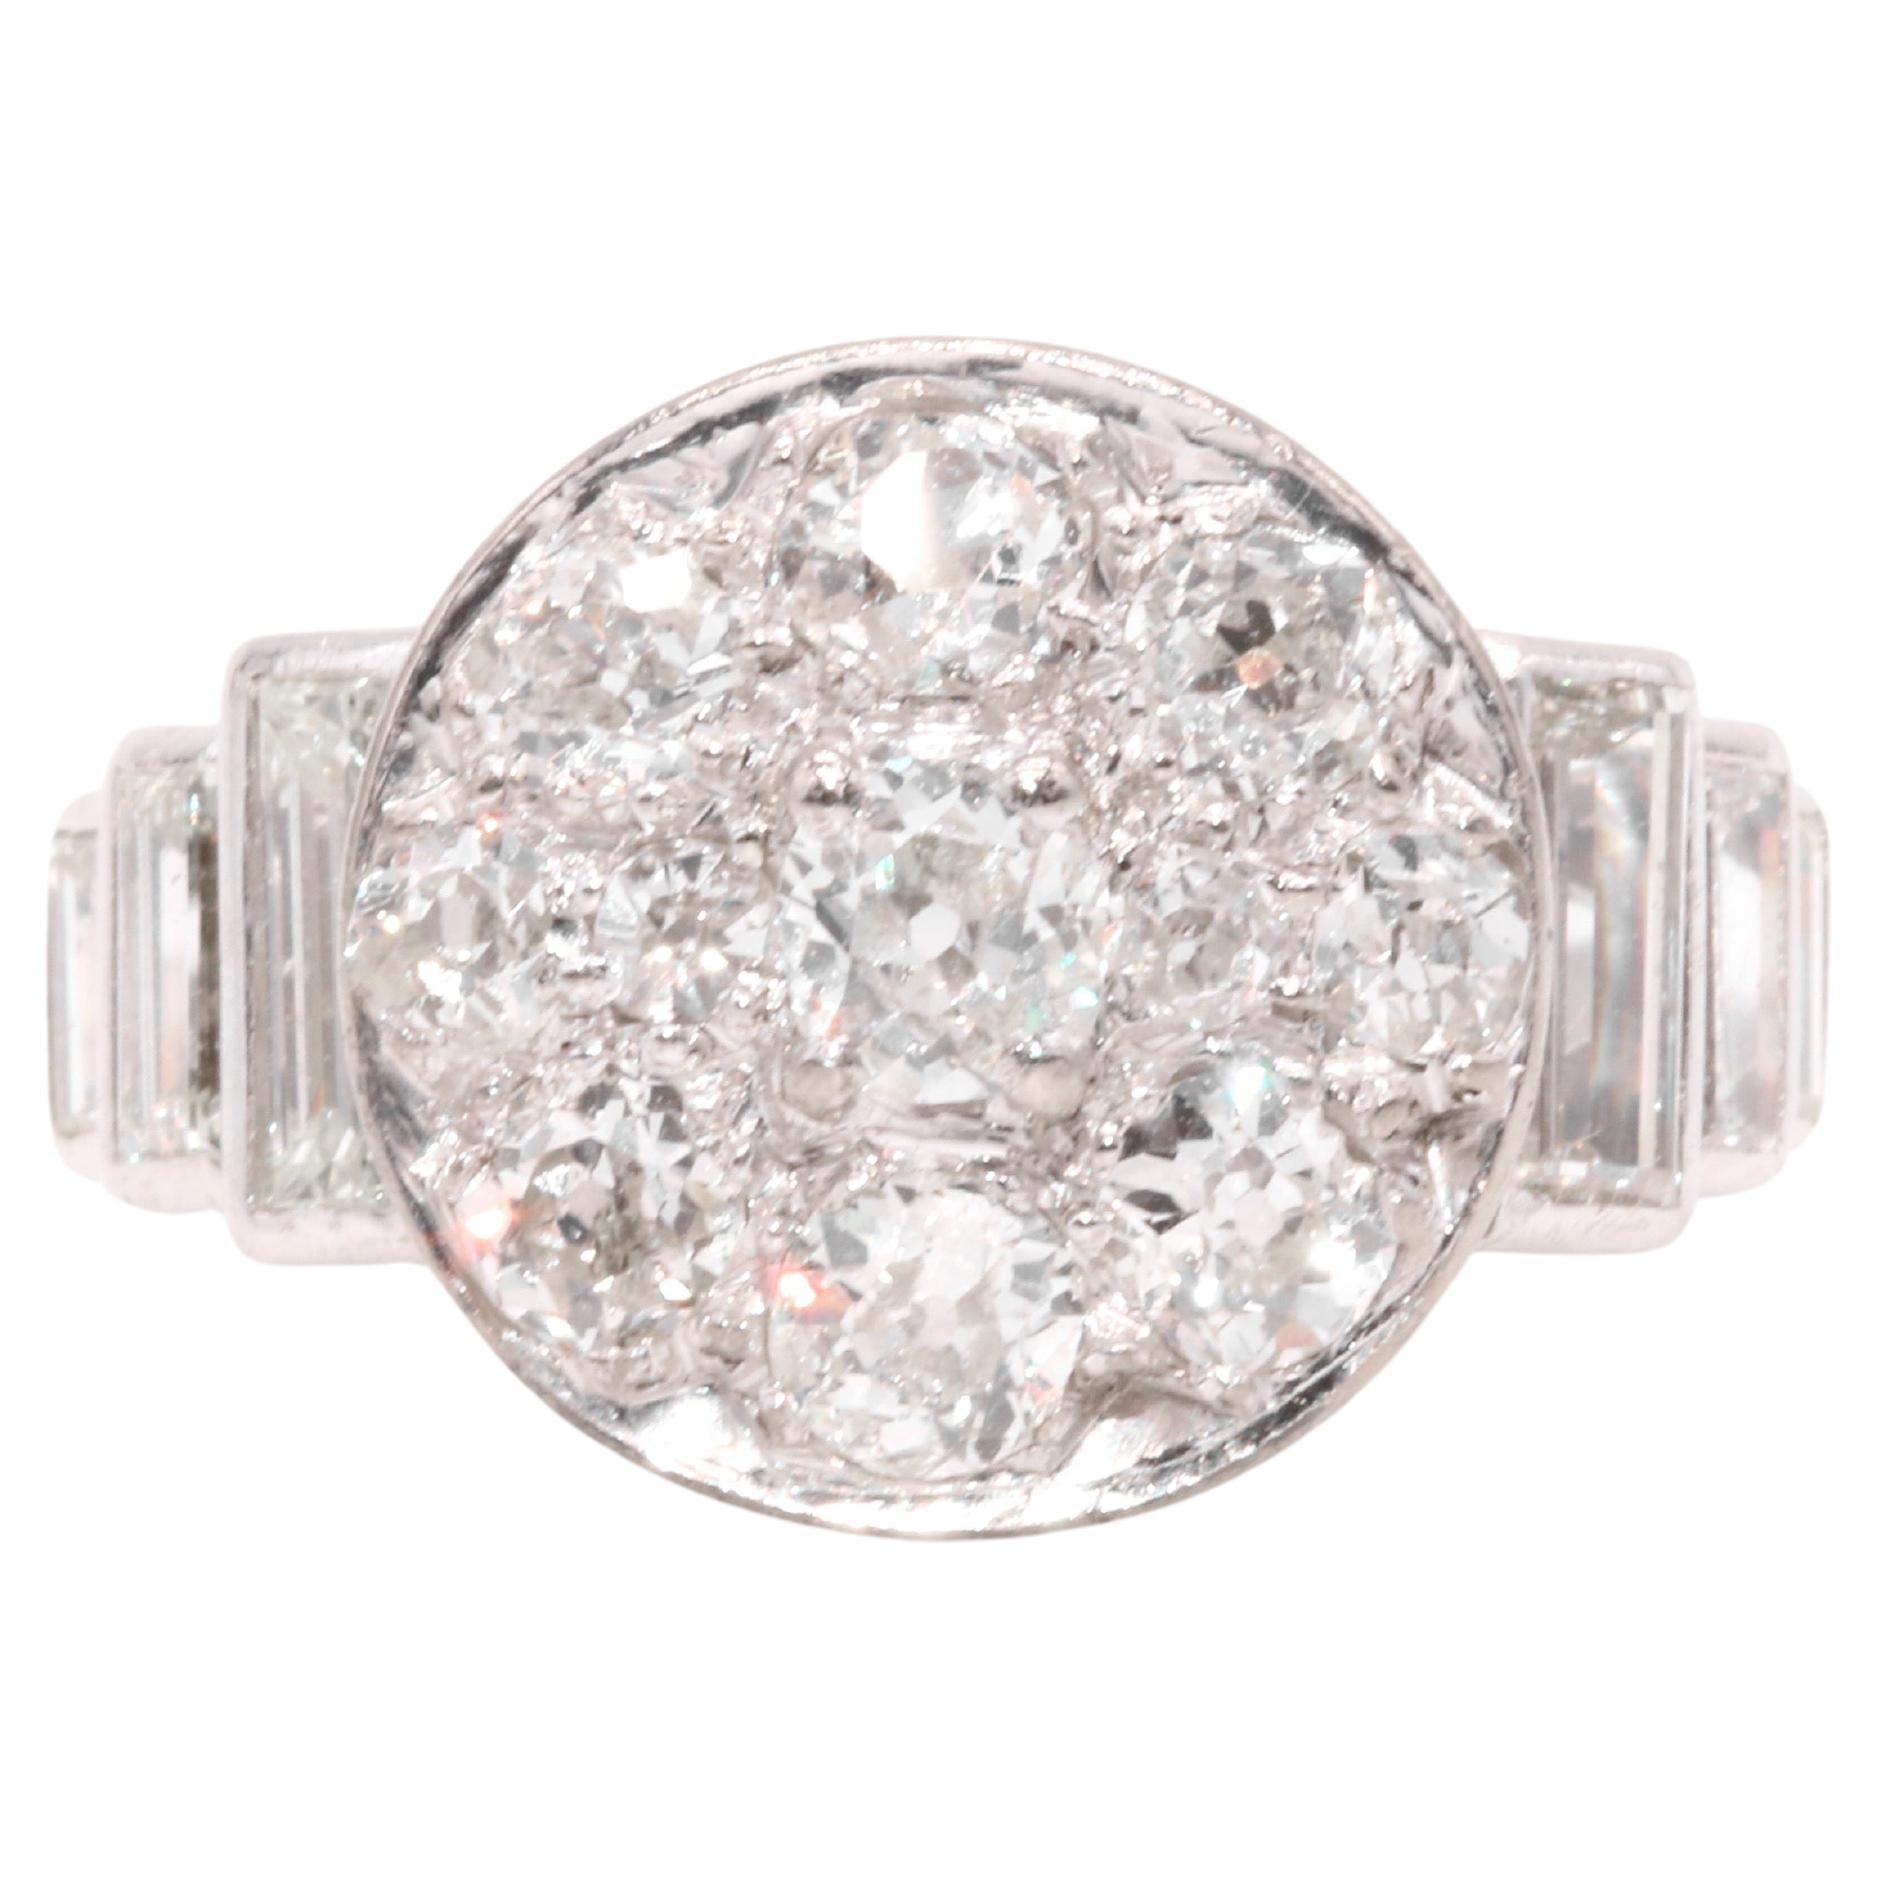 Art Deco 1930s Platinum 2.44ctw Old Cut Diamond Ring with Baguette Cut Shoulders